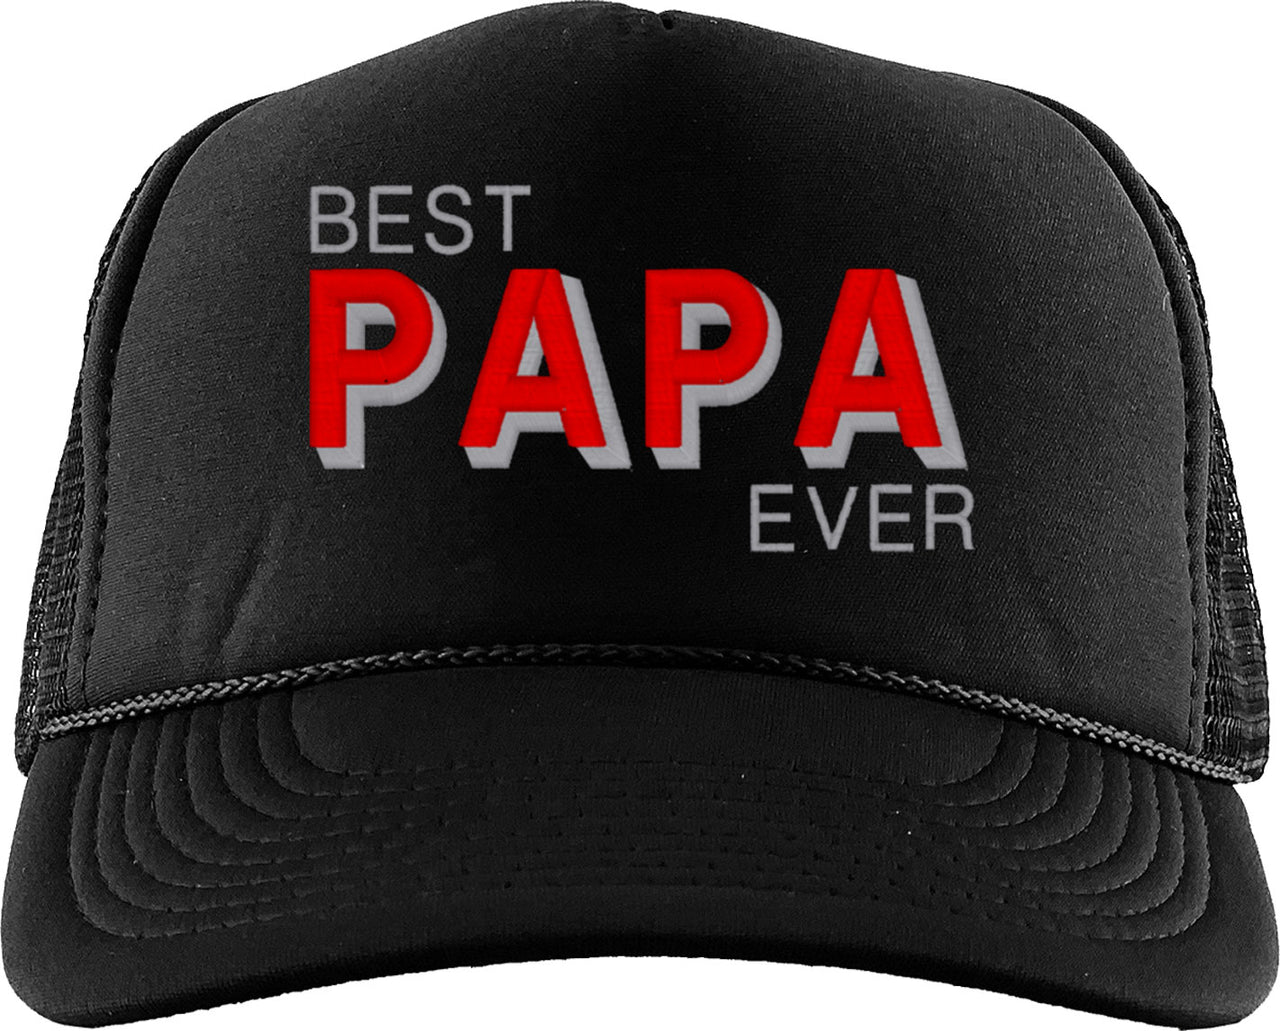 Best Papa Ever Foam Trucker Hat